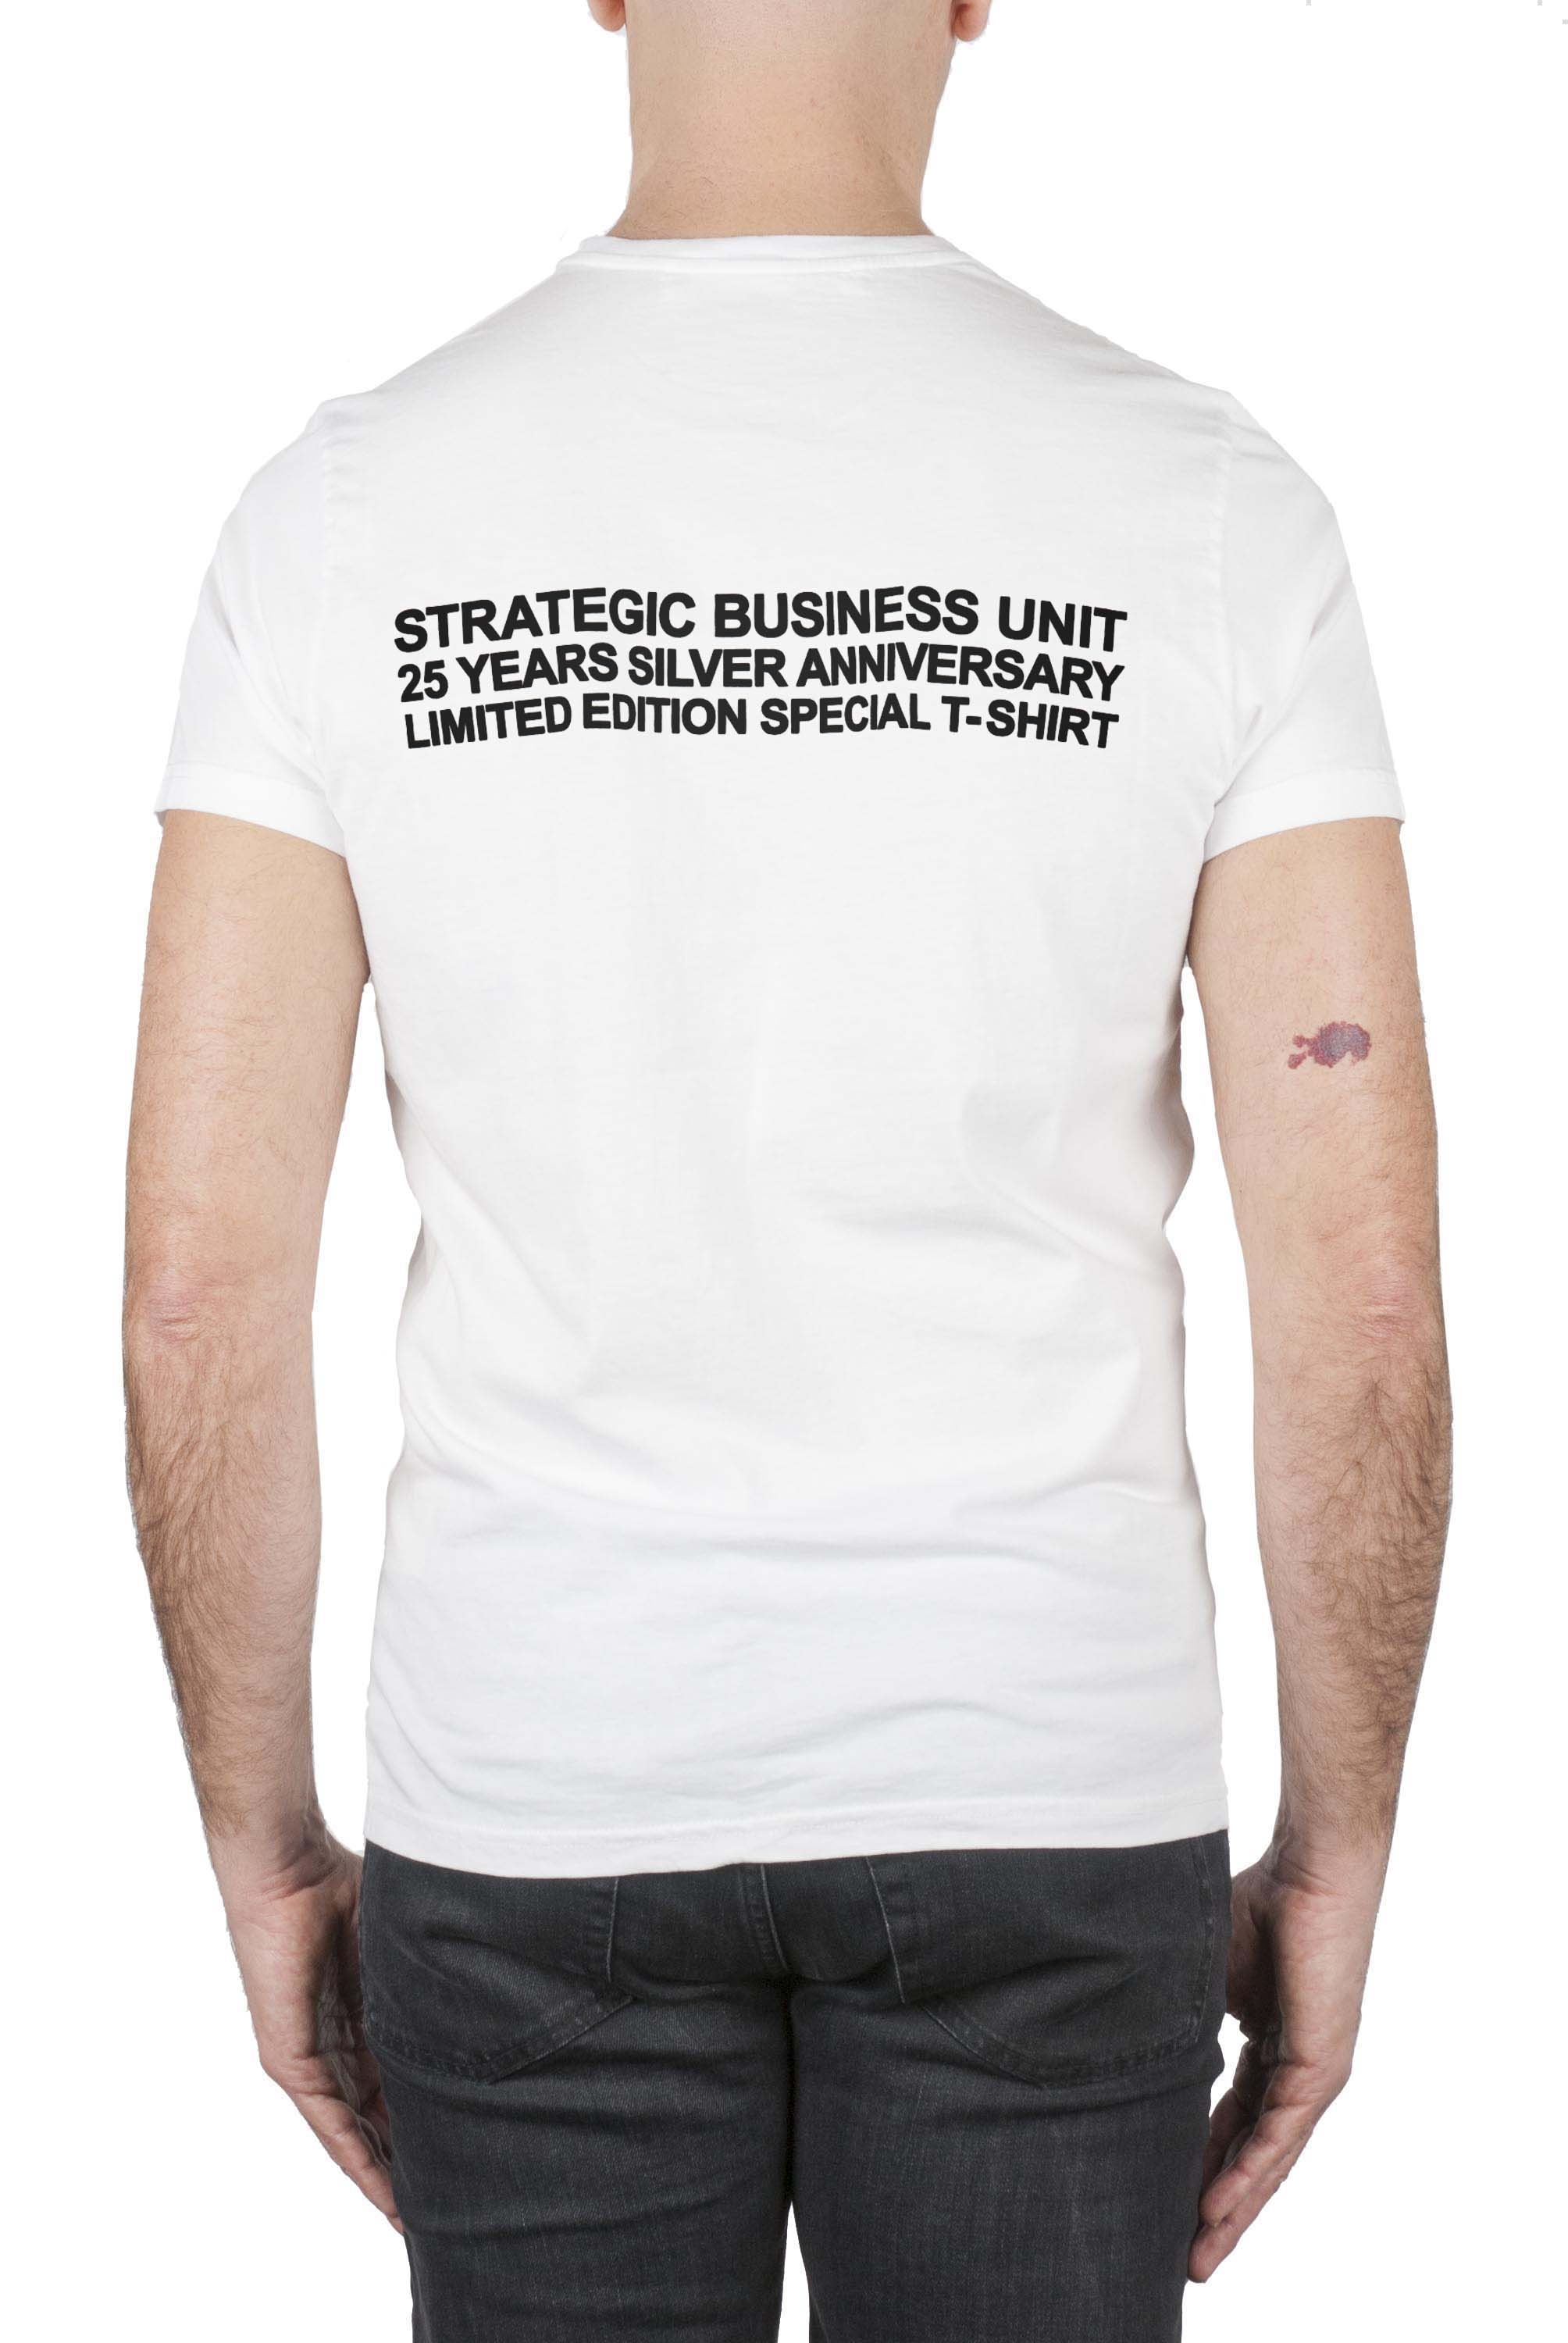 SBU 01787_19AW T-shirt girocollo bianca stampa anniversario 25 anni SBU 01